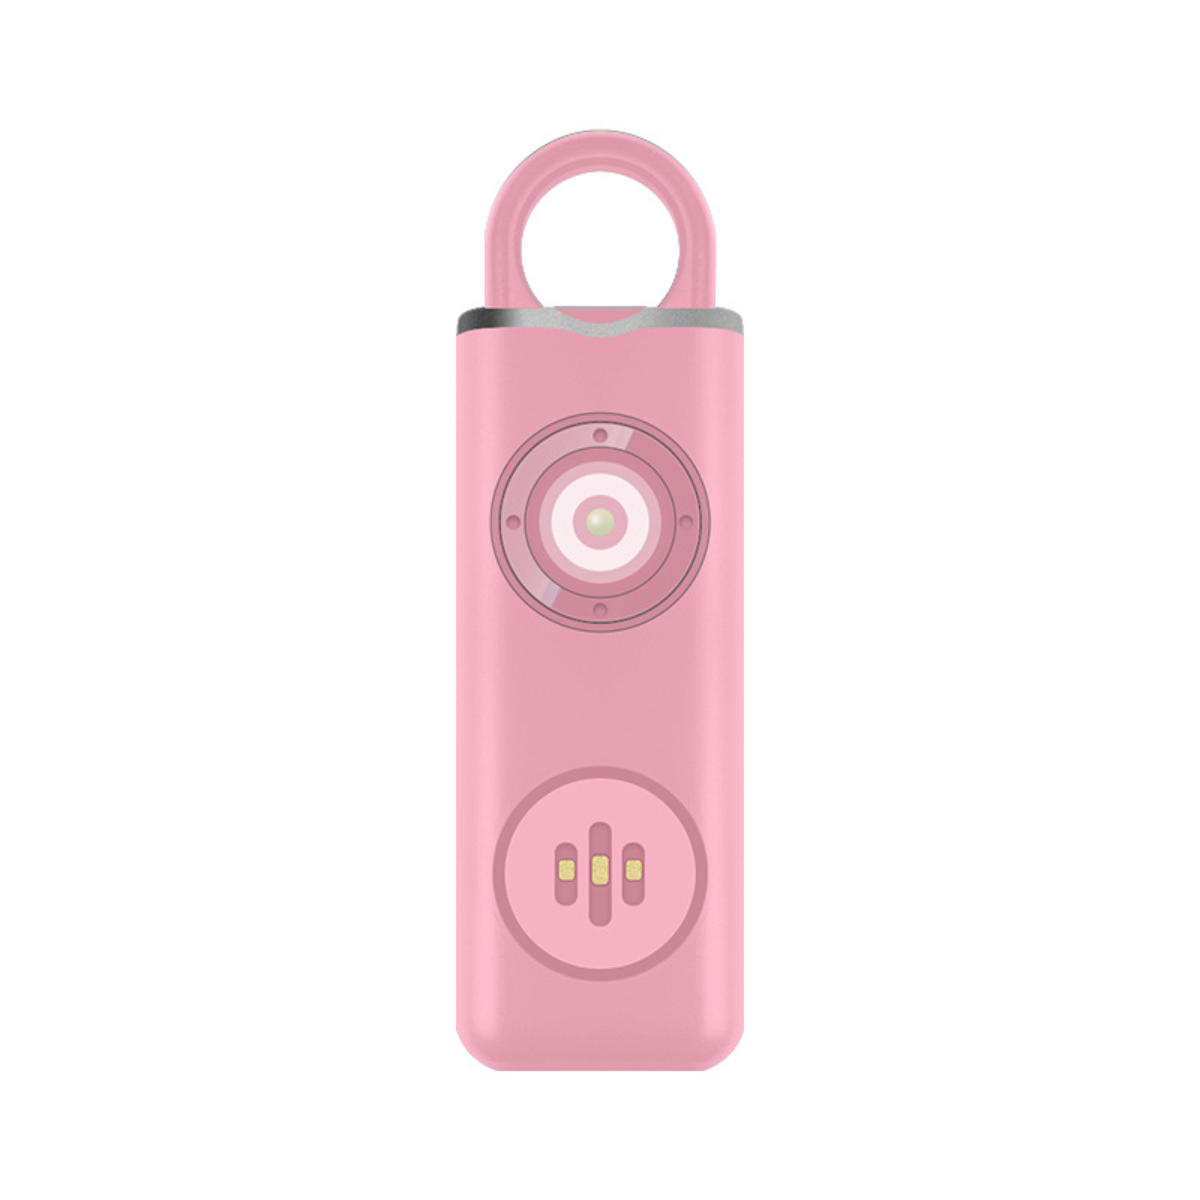 LACAMAX Pinker wiederaufladbarer - Rosa Schlüsselanhänger LED-beleuchtet, Alarme, Alarm Zyklus Body